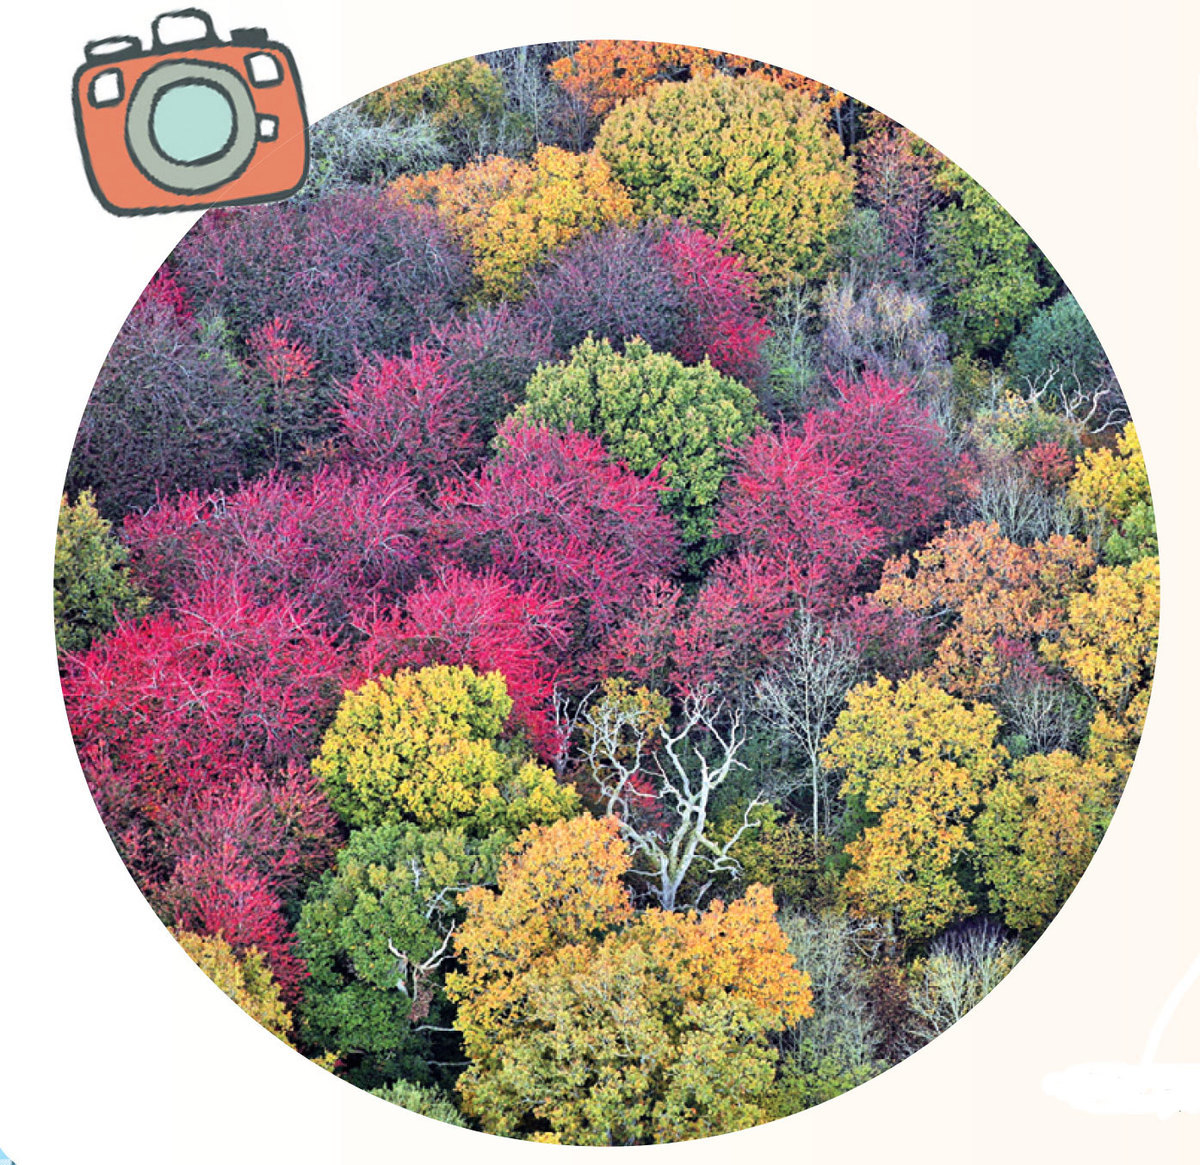 韋斯頓柏植物園秋樹色彩繽紛。